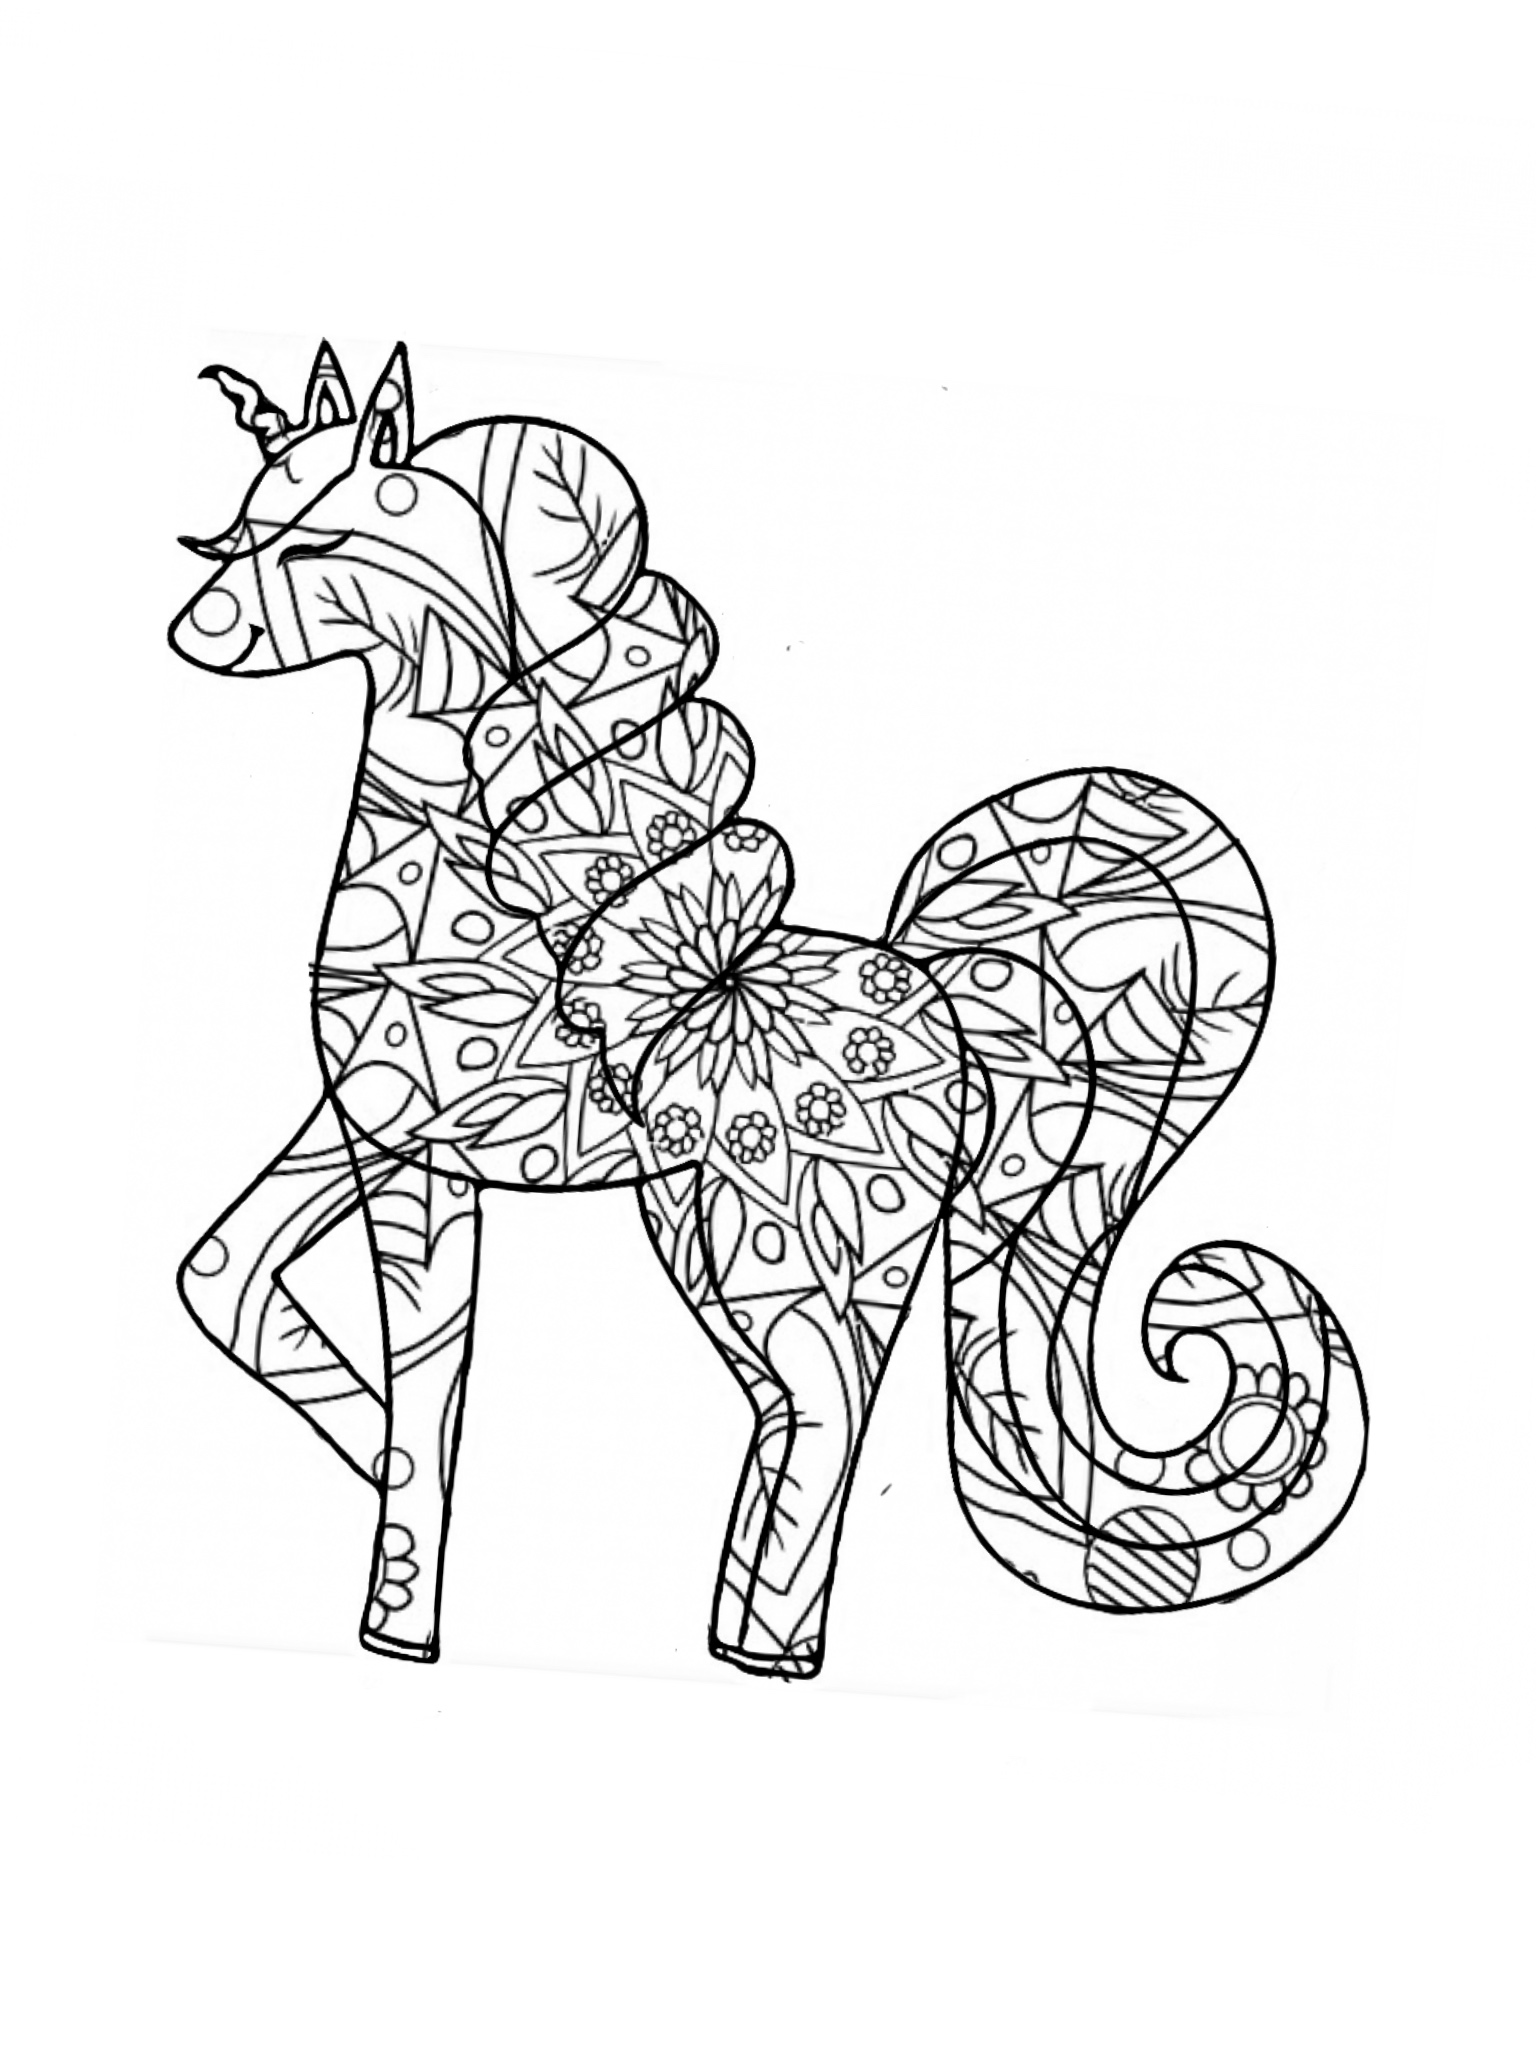 Mandala Unicorn Coloring Page. Itsostylish.com